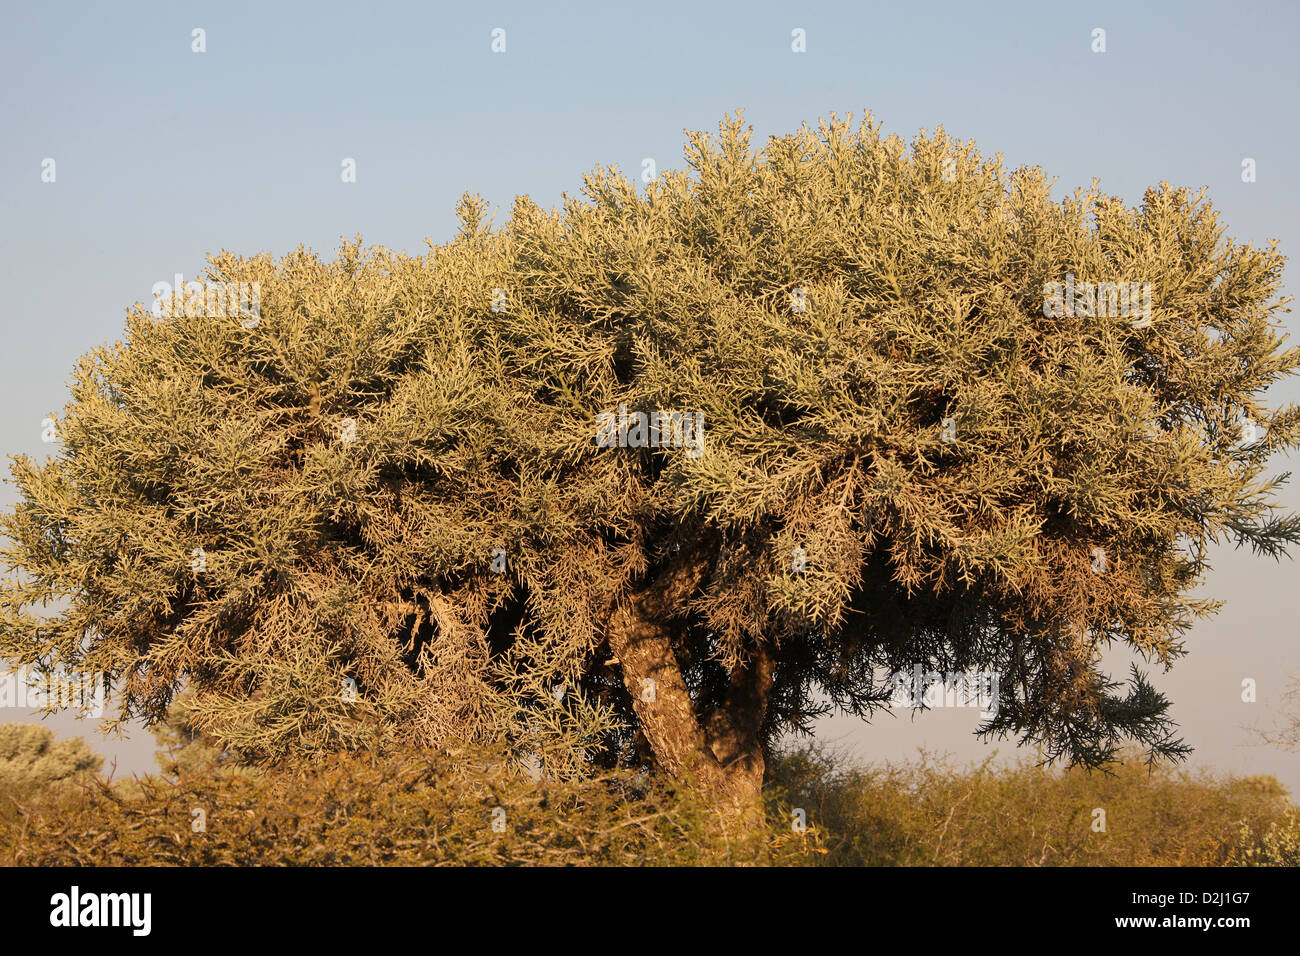 Silber-Dickicht, einem madagassischen stacheligen Wald Baum, Euphorbia Stenoclada, Euphorbiaceae. Anakao, Süd-Madagaskar, Afrika. Stockfoto